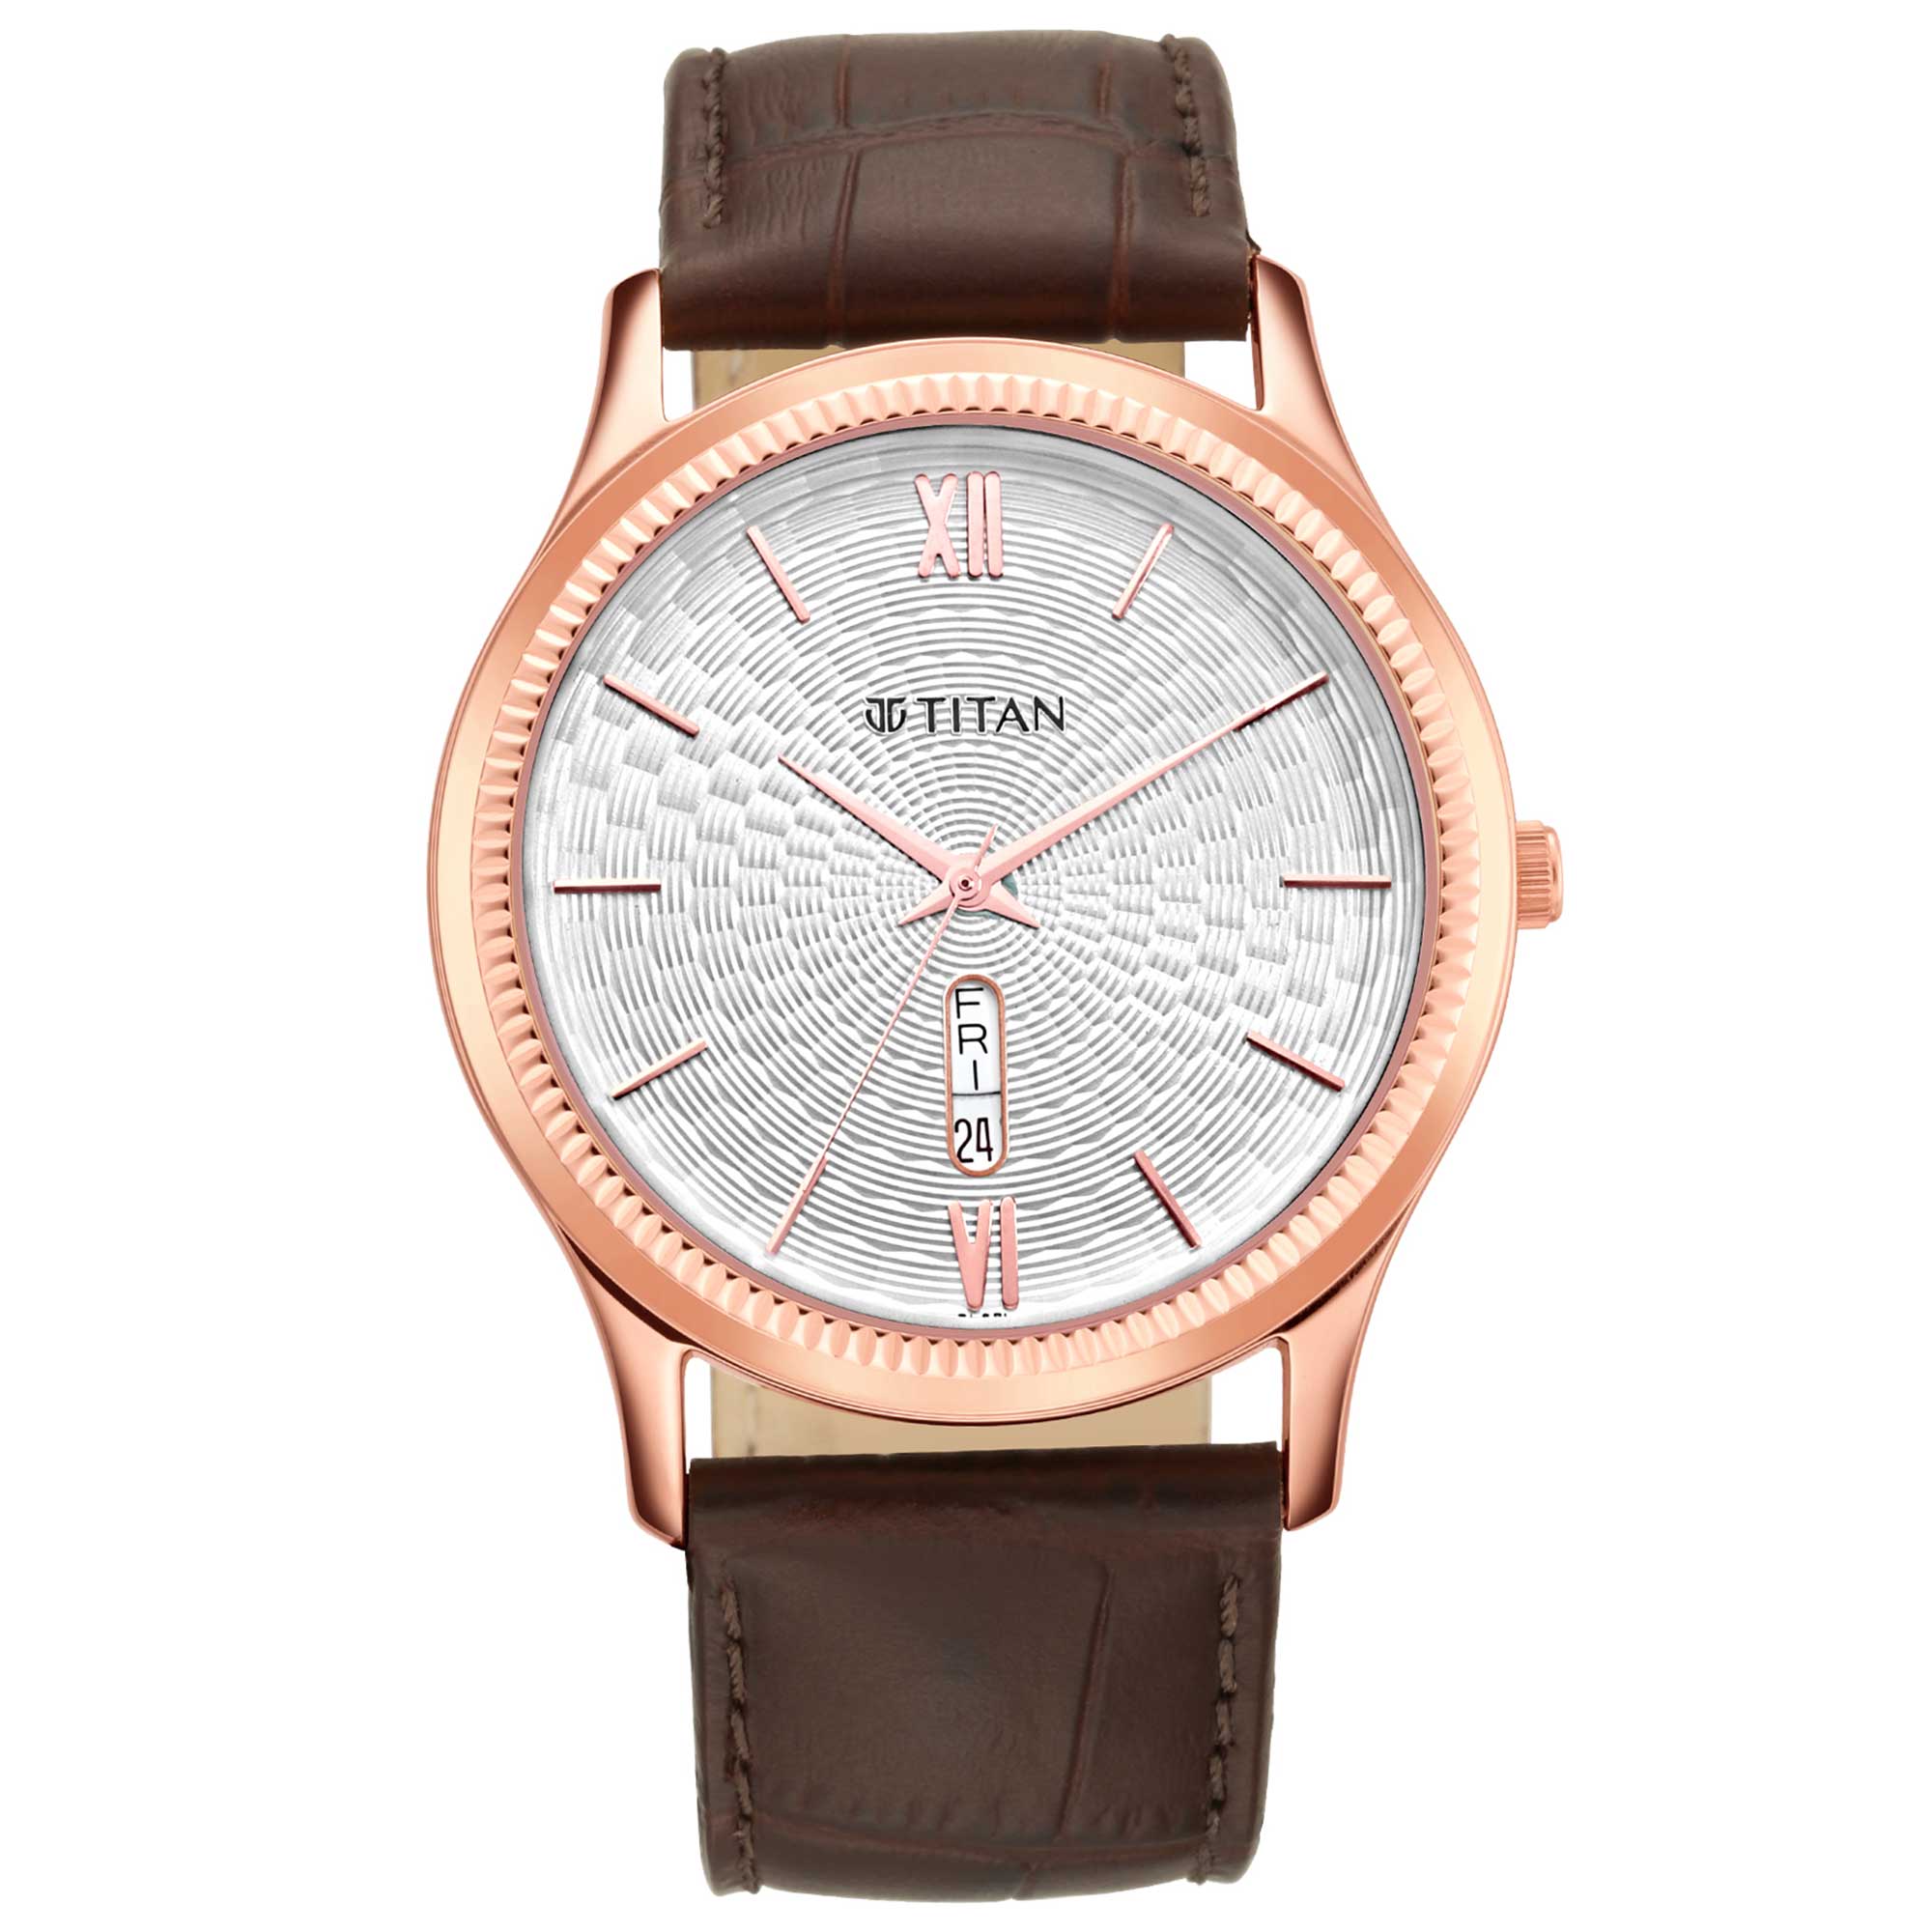 Titan men's analog watch 1824WL02